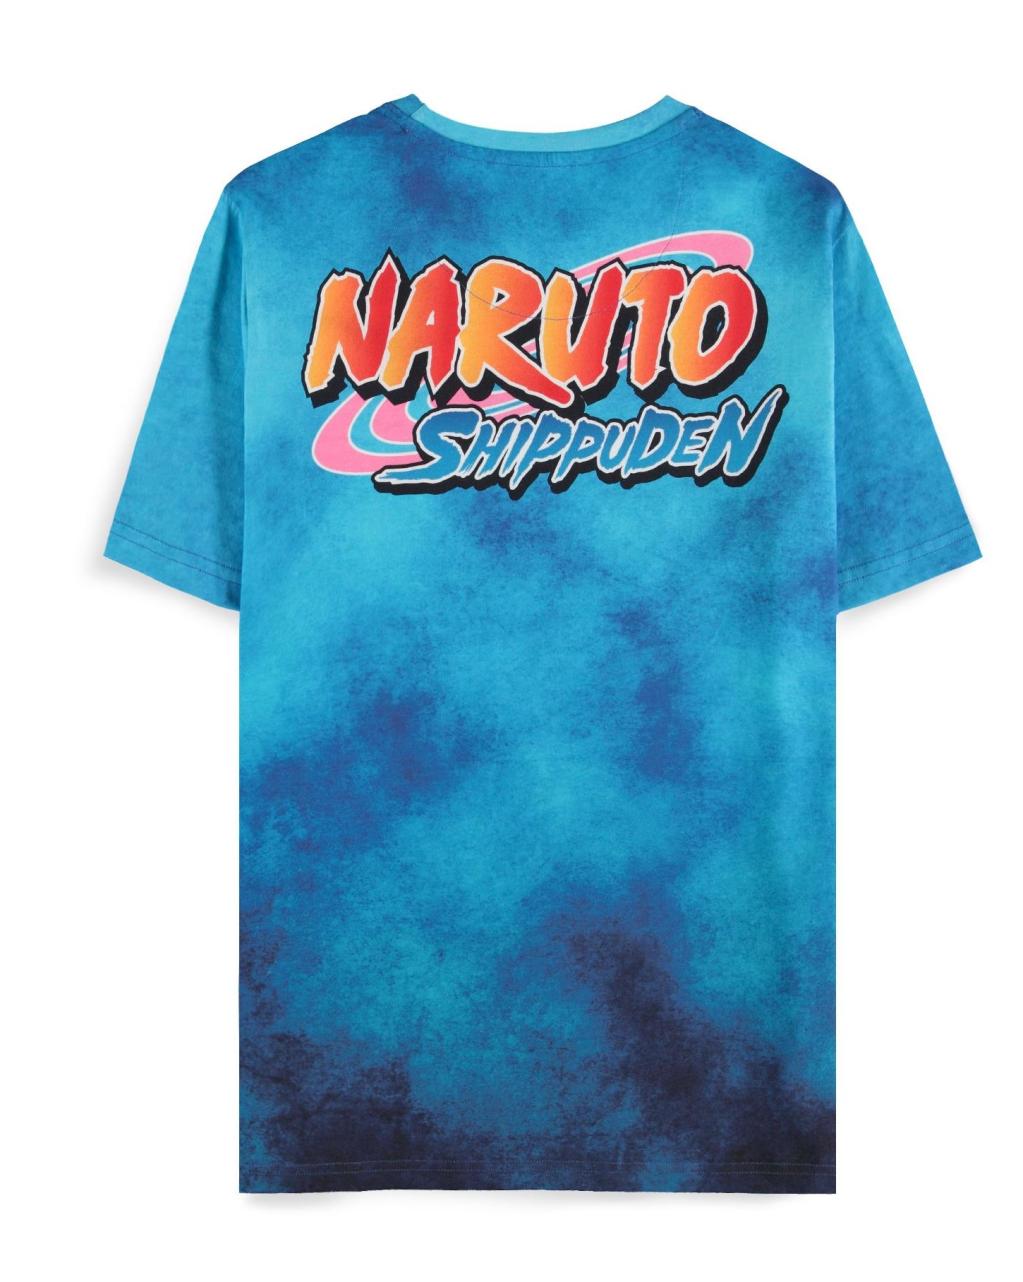 NARUTO SHIPPUDEN - Naruto & Sasuke - Men's T-shirt (L)